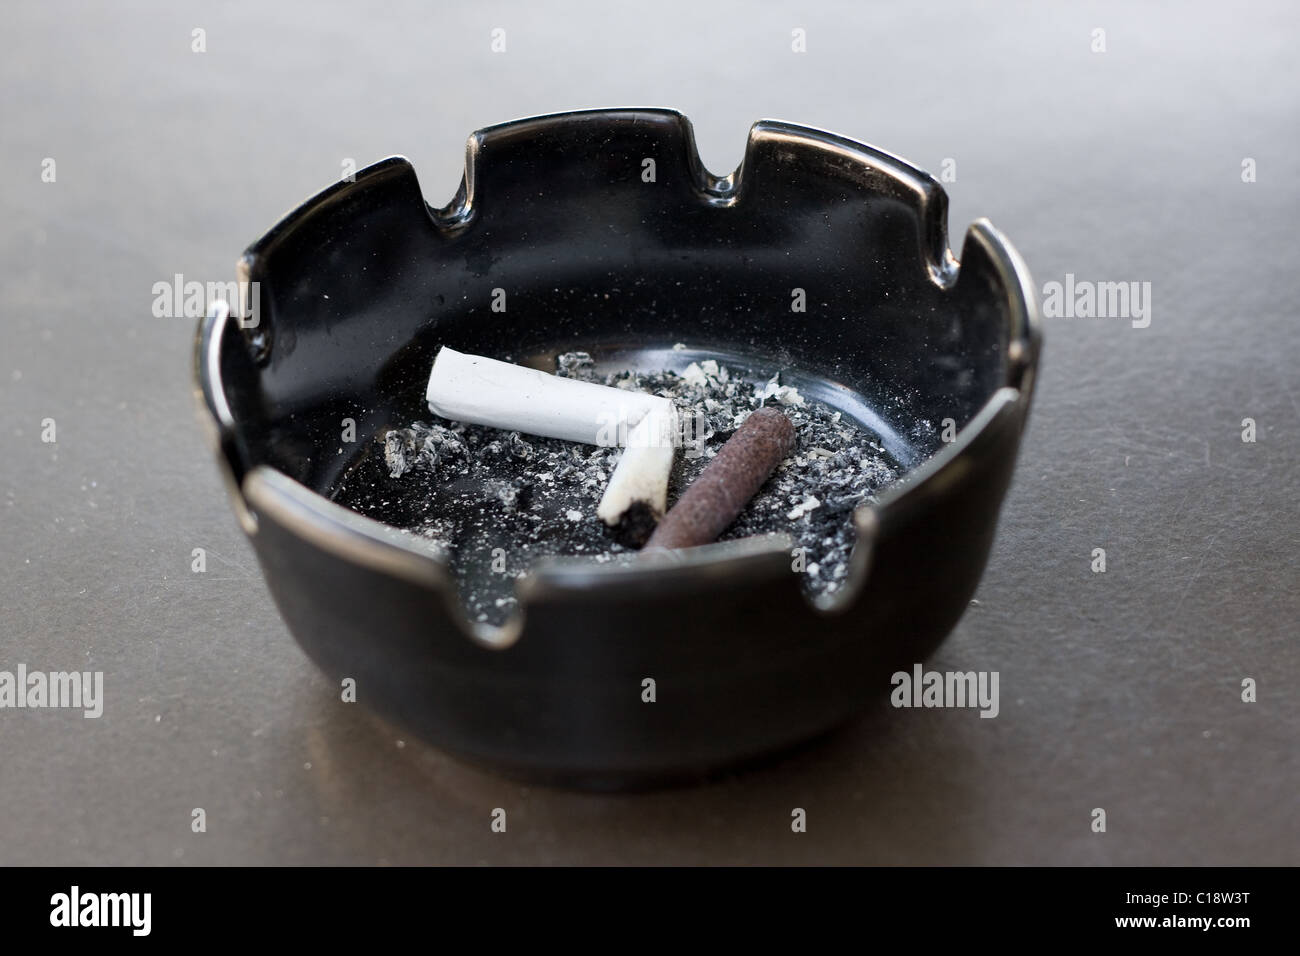 Sigarette e sigari e mozziconi di cenere in un posacenere su una tabella. Estremamente limitata profondità di campo con ceneri nel fuoco. Foto Stock